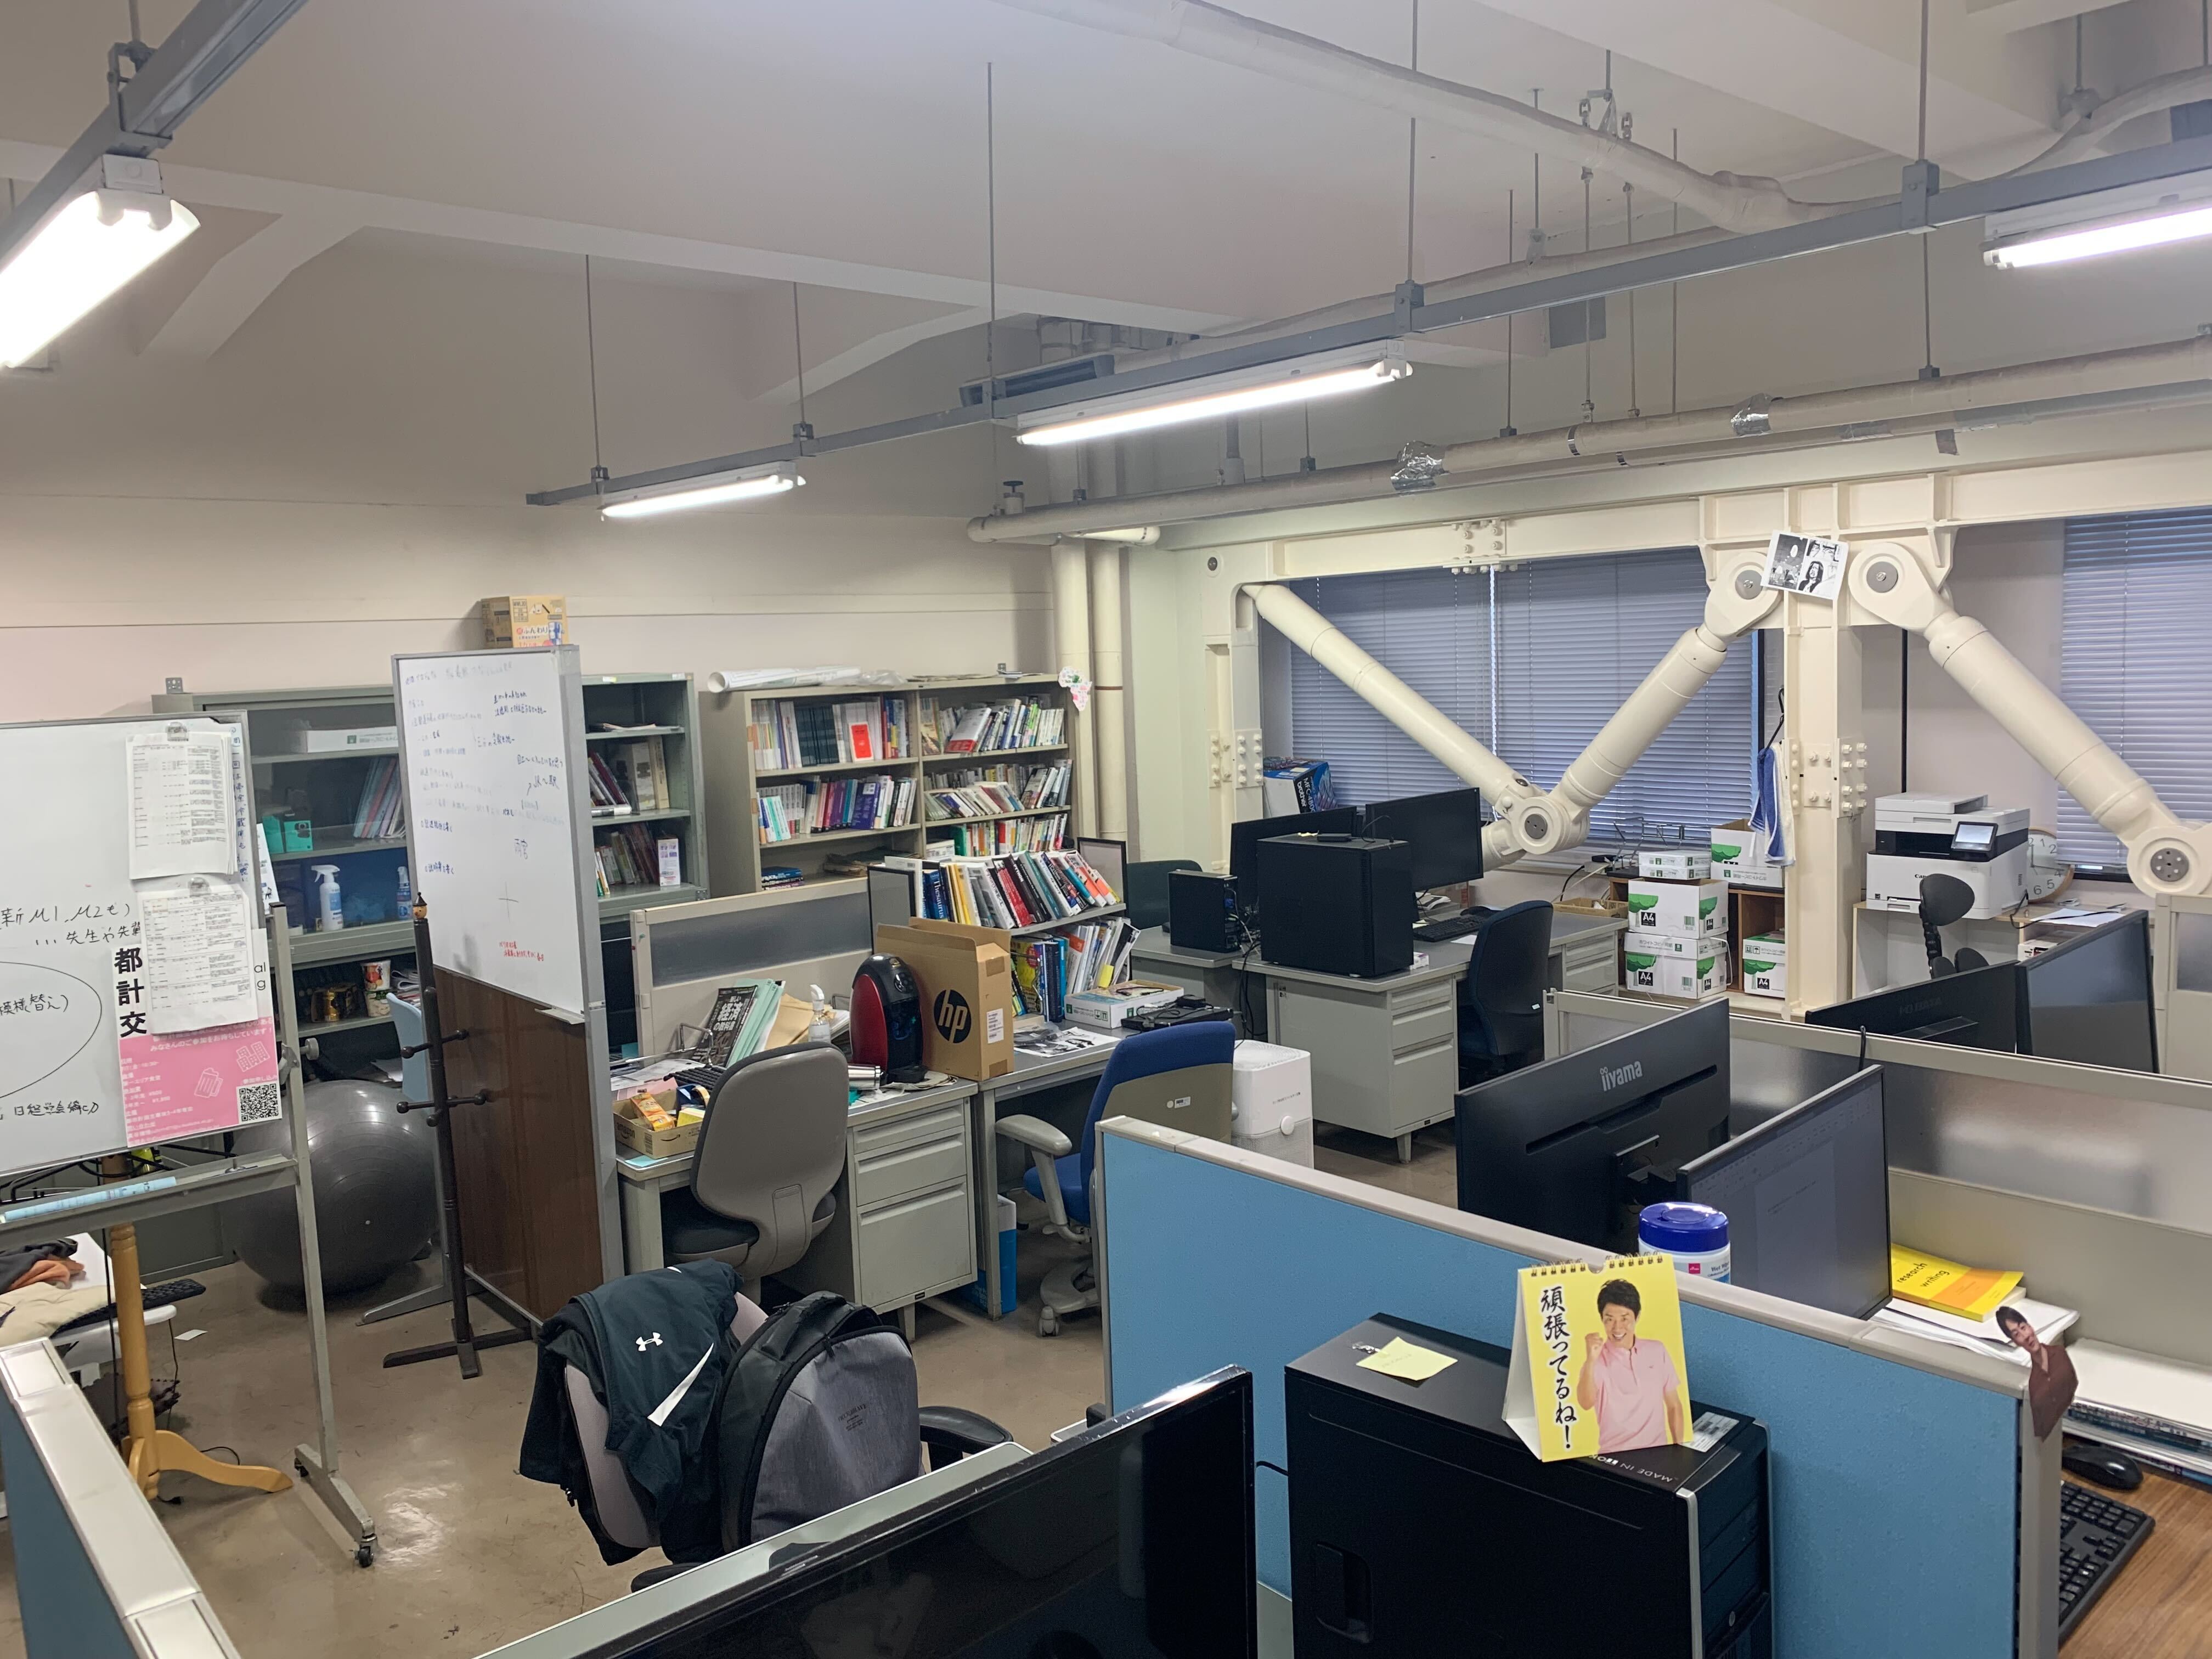 学生さんたちがいる研究室の風景です。私も大学院生の時にまさにこの部屋で研究をしていました。